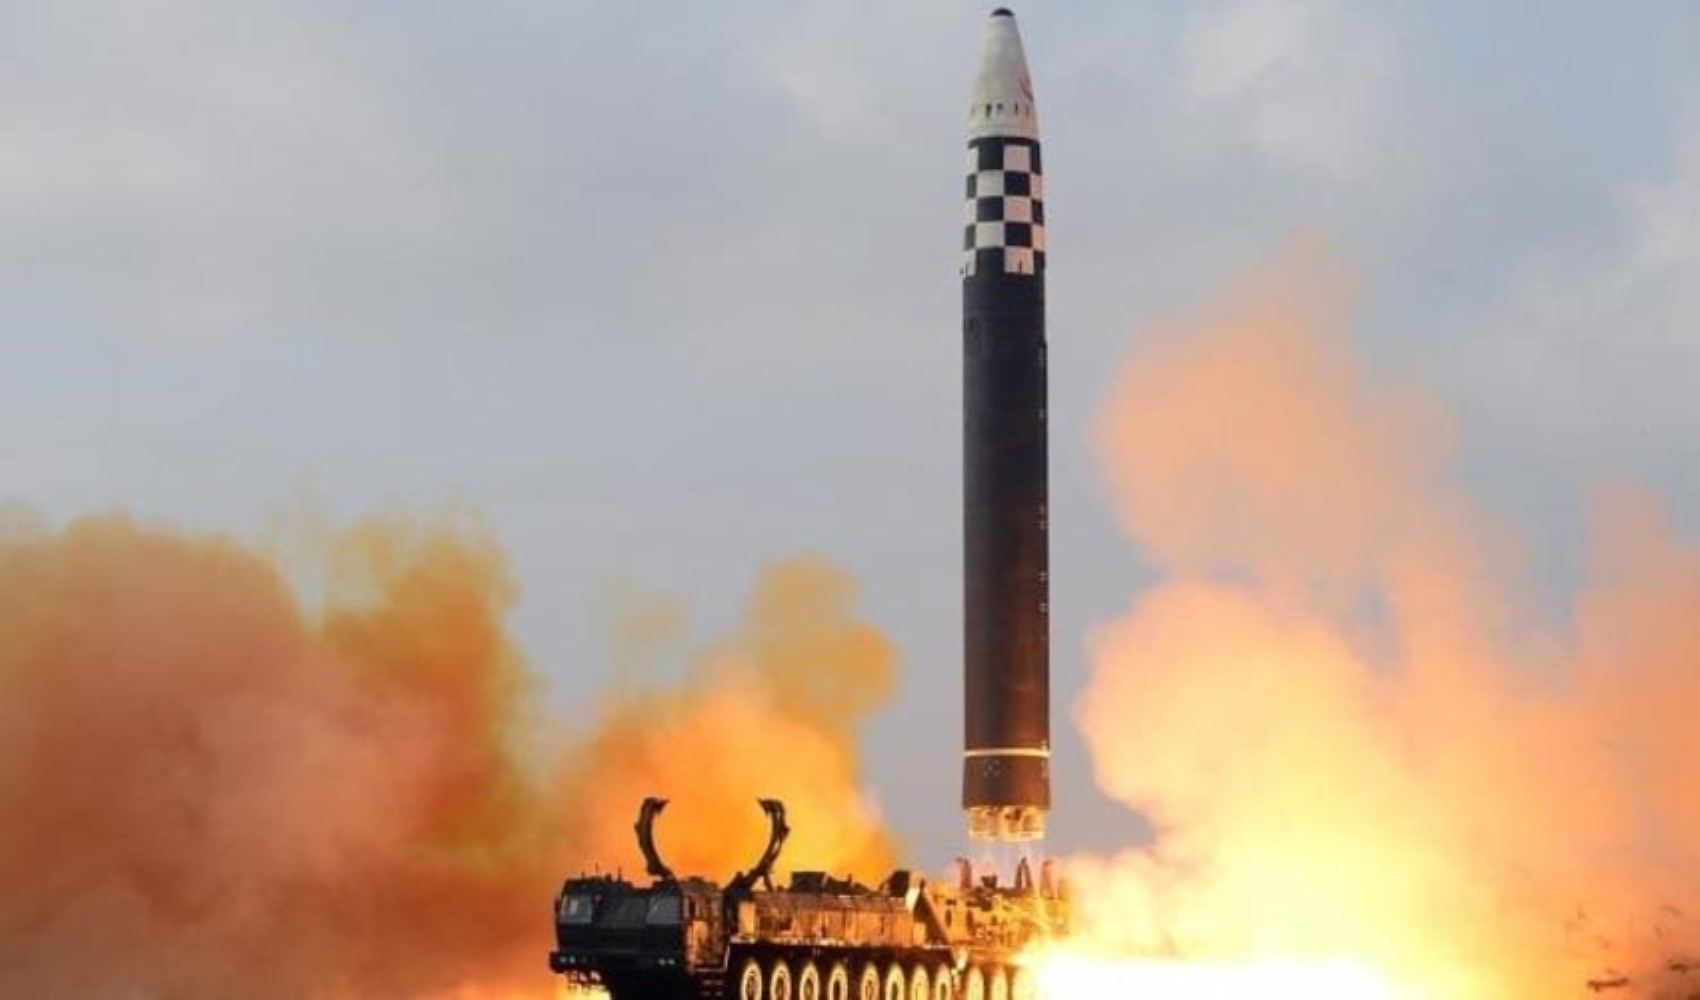 Kuzey Kore balistik füze fırlattı: 'Provokasyon' tepkisi